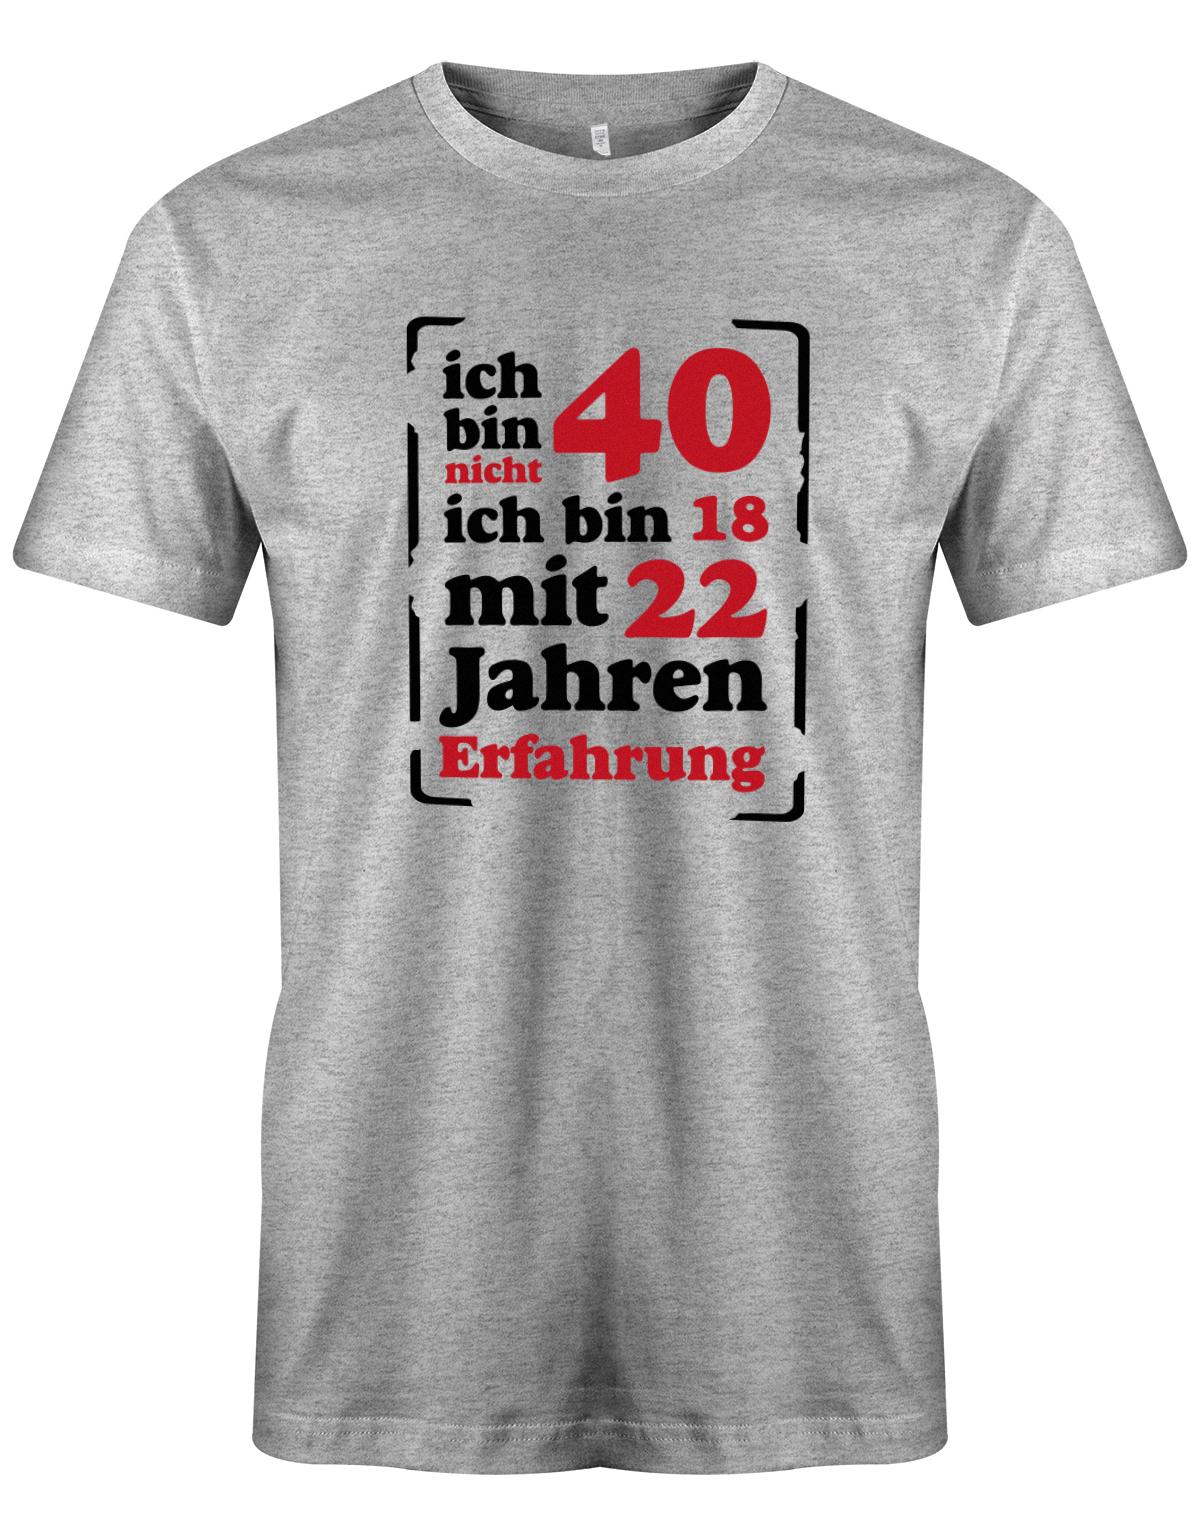 Ich bin nicht 40 ich bin 18 mit 22 Jahren Erfahrung - T-Shirt 40 Geburtstag Männer myShirtStore Grau